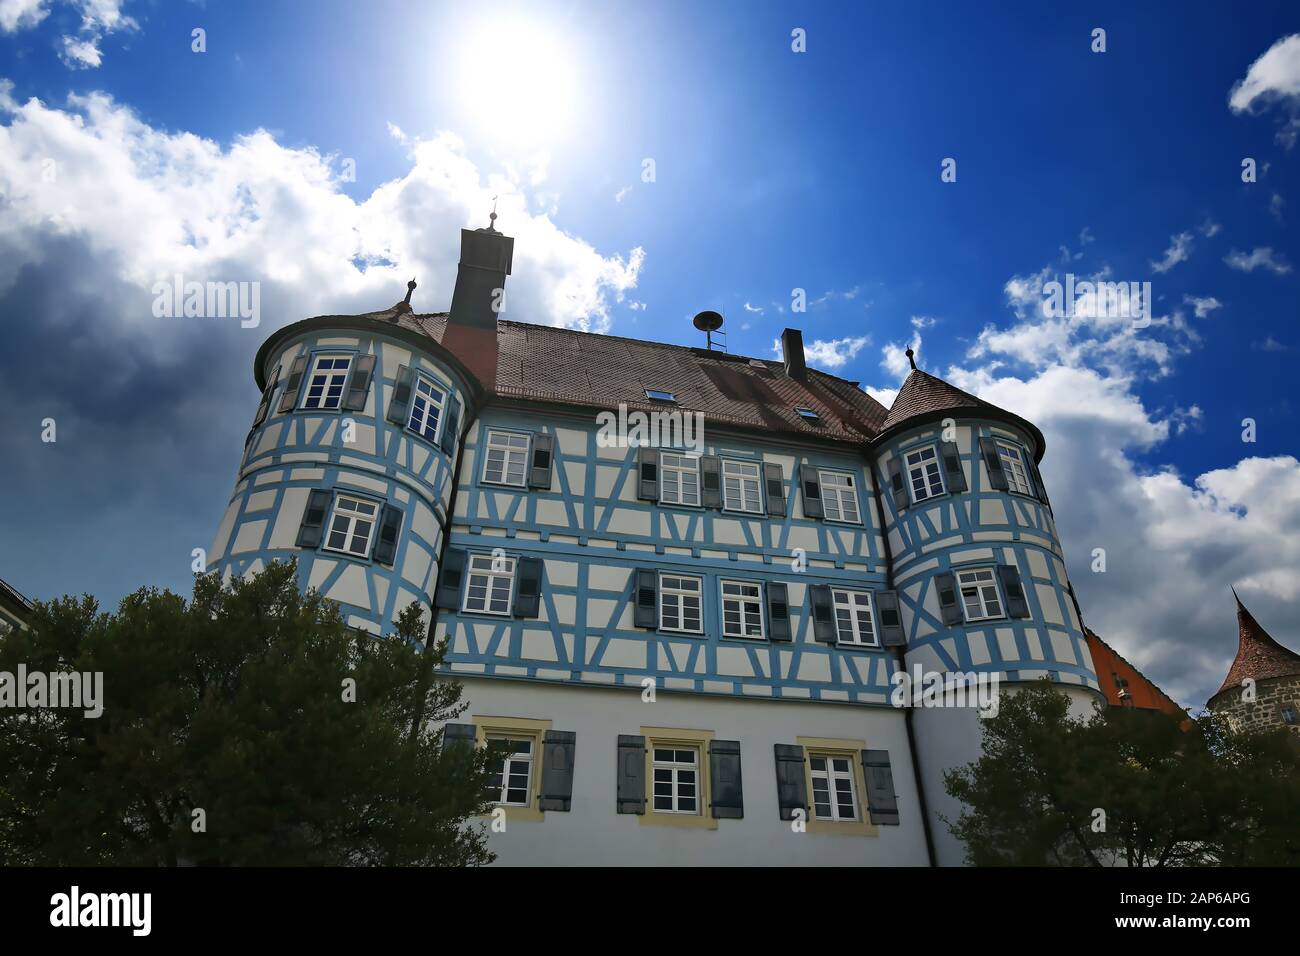 Obersontheim es una ciudad que vale la pena visitar en Alemania Foto de stock